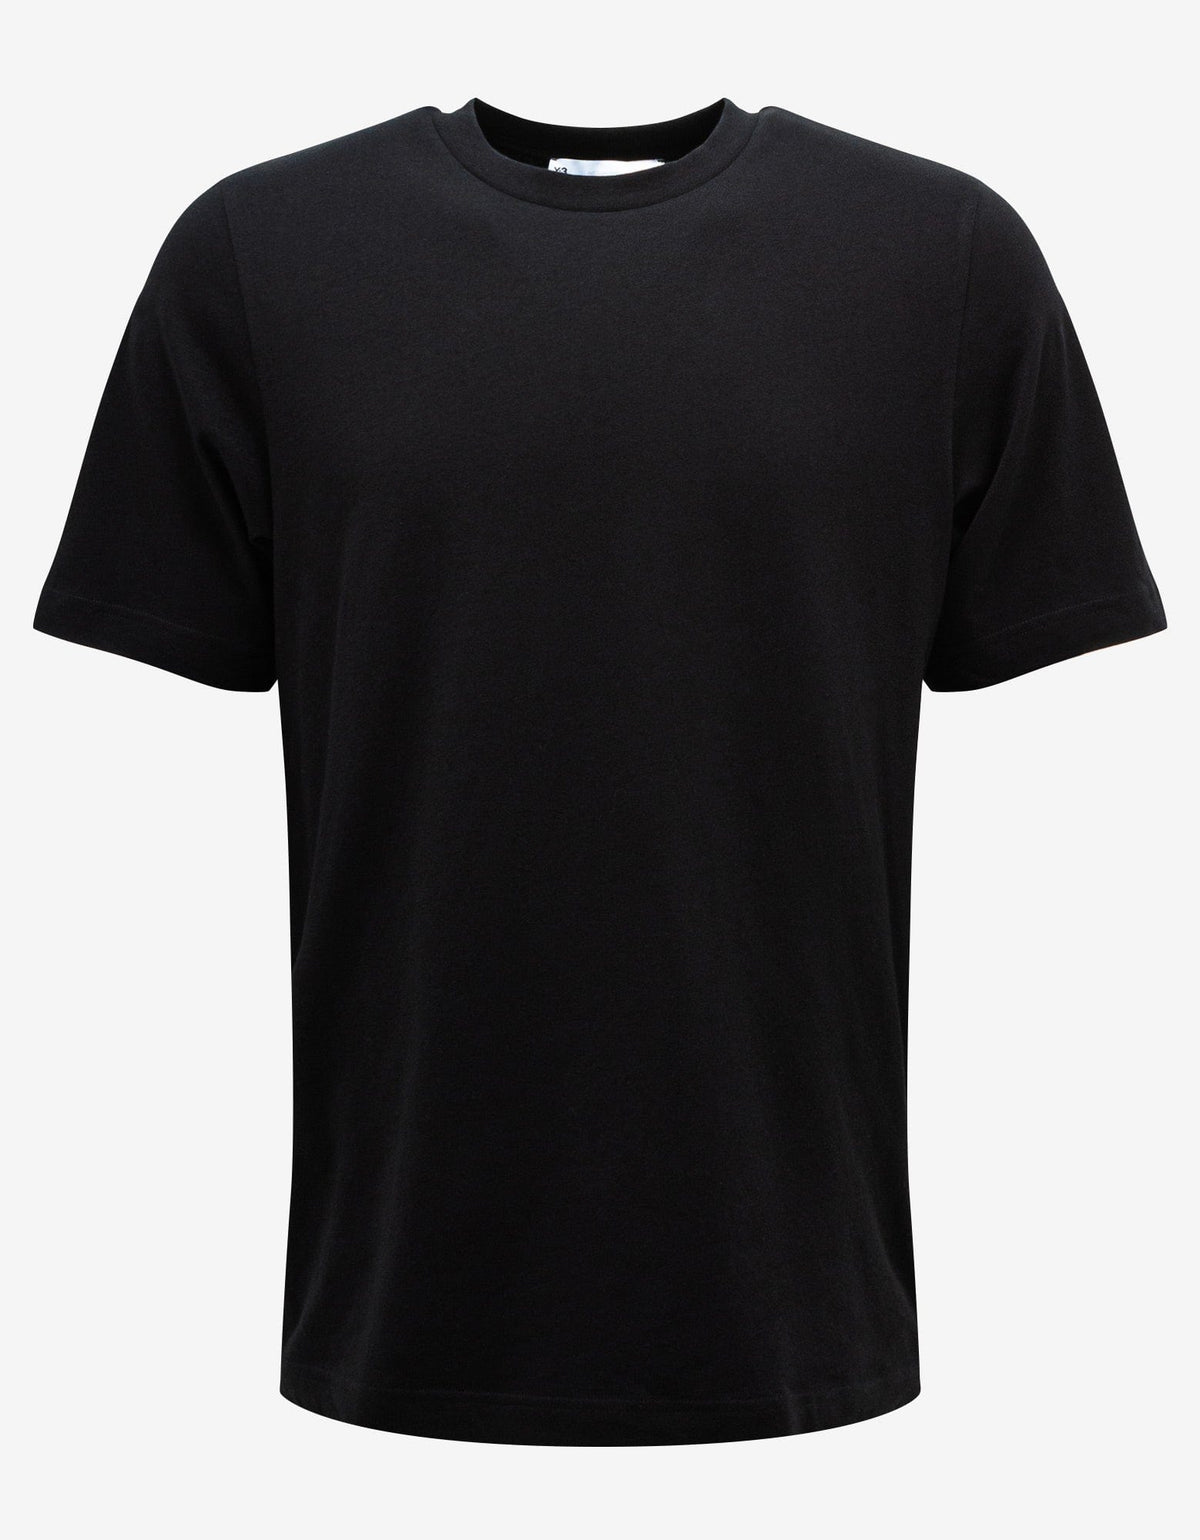 Y-3 Black CH2 Index T-Shirt